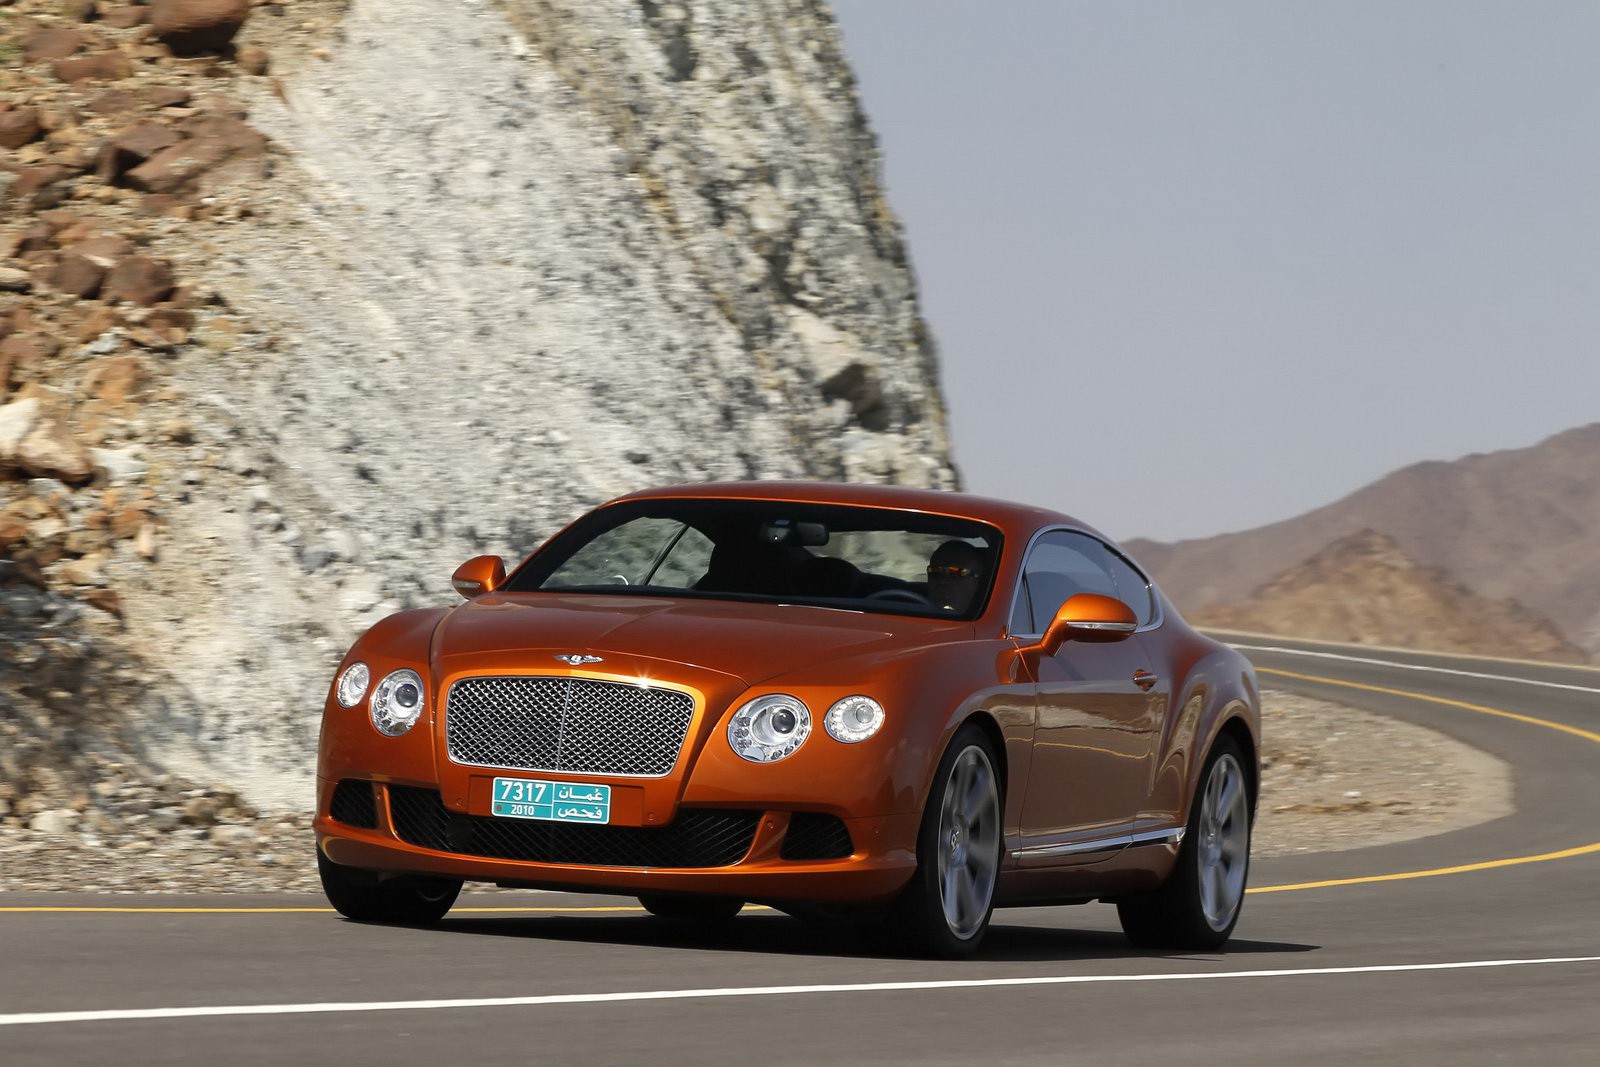 Se acerca el nuevo Bentley Continental GT, y estos son sus detalles y características